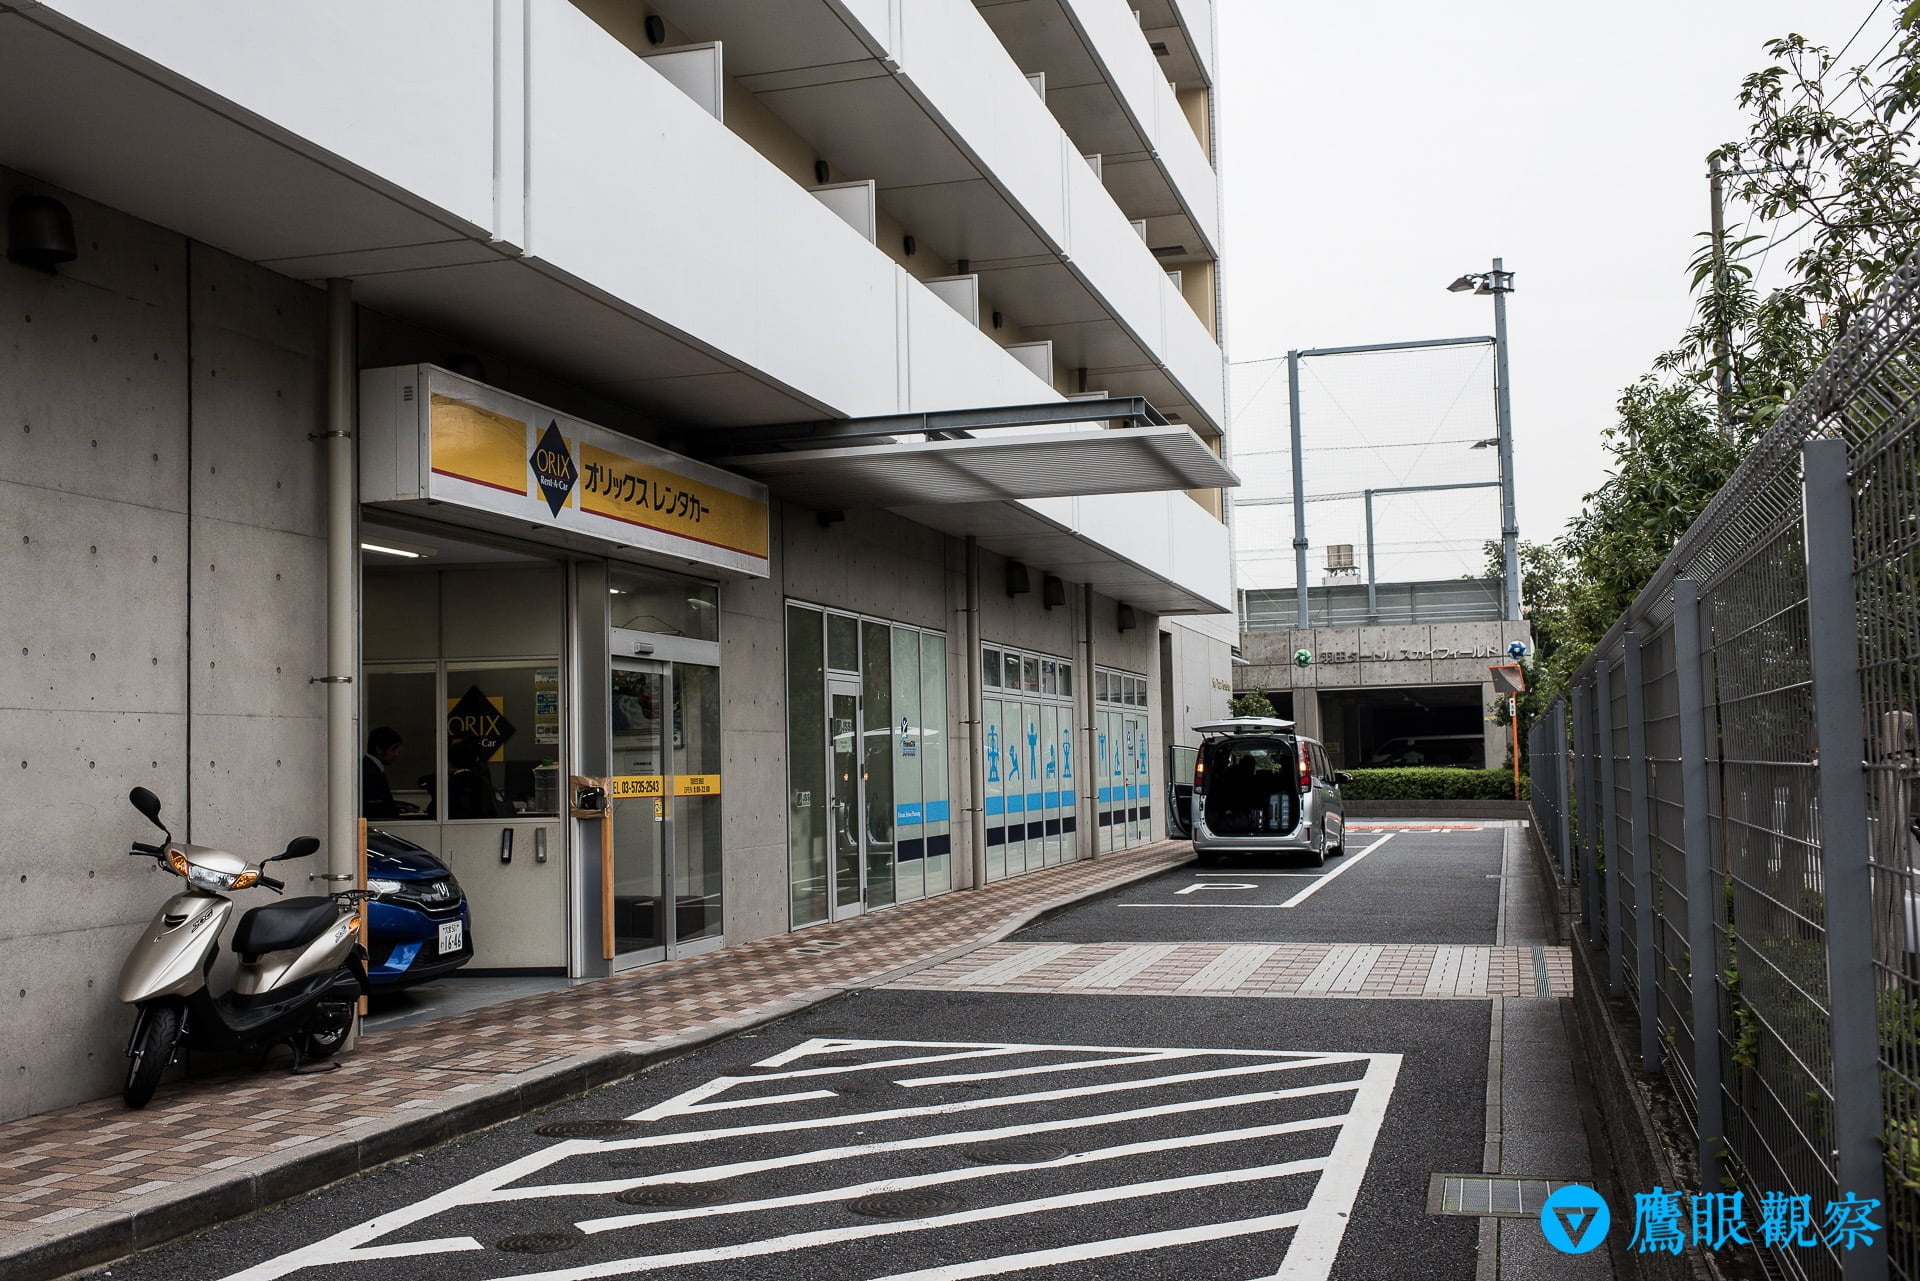 日本租車：從東京機場自駕暢遊北關東 3 縣的旅遊行程預定、租取還車教學 Rental Cars in Airport Tokyo Japan with Orix 7